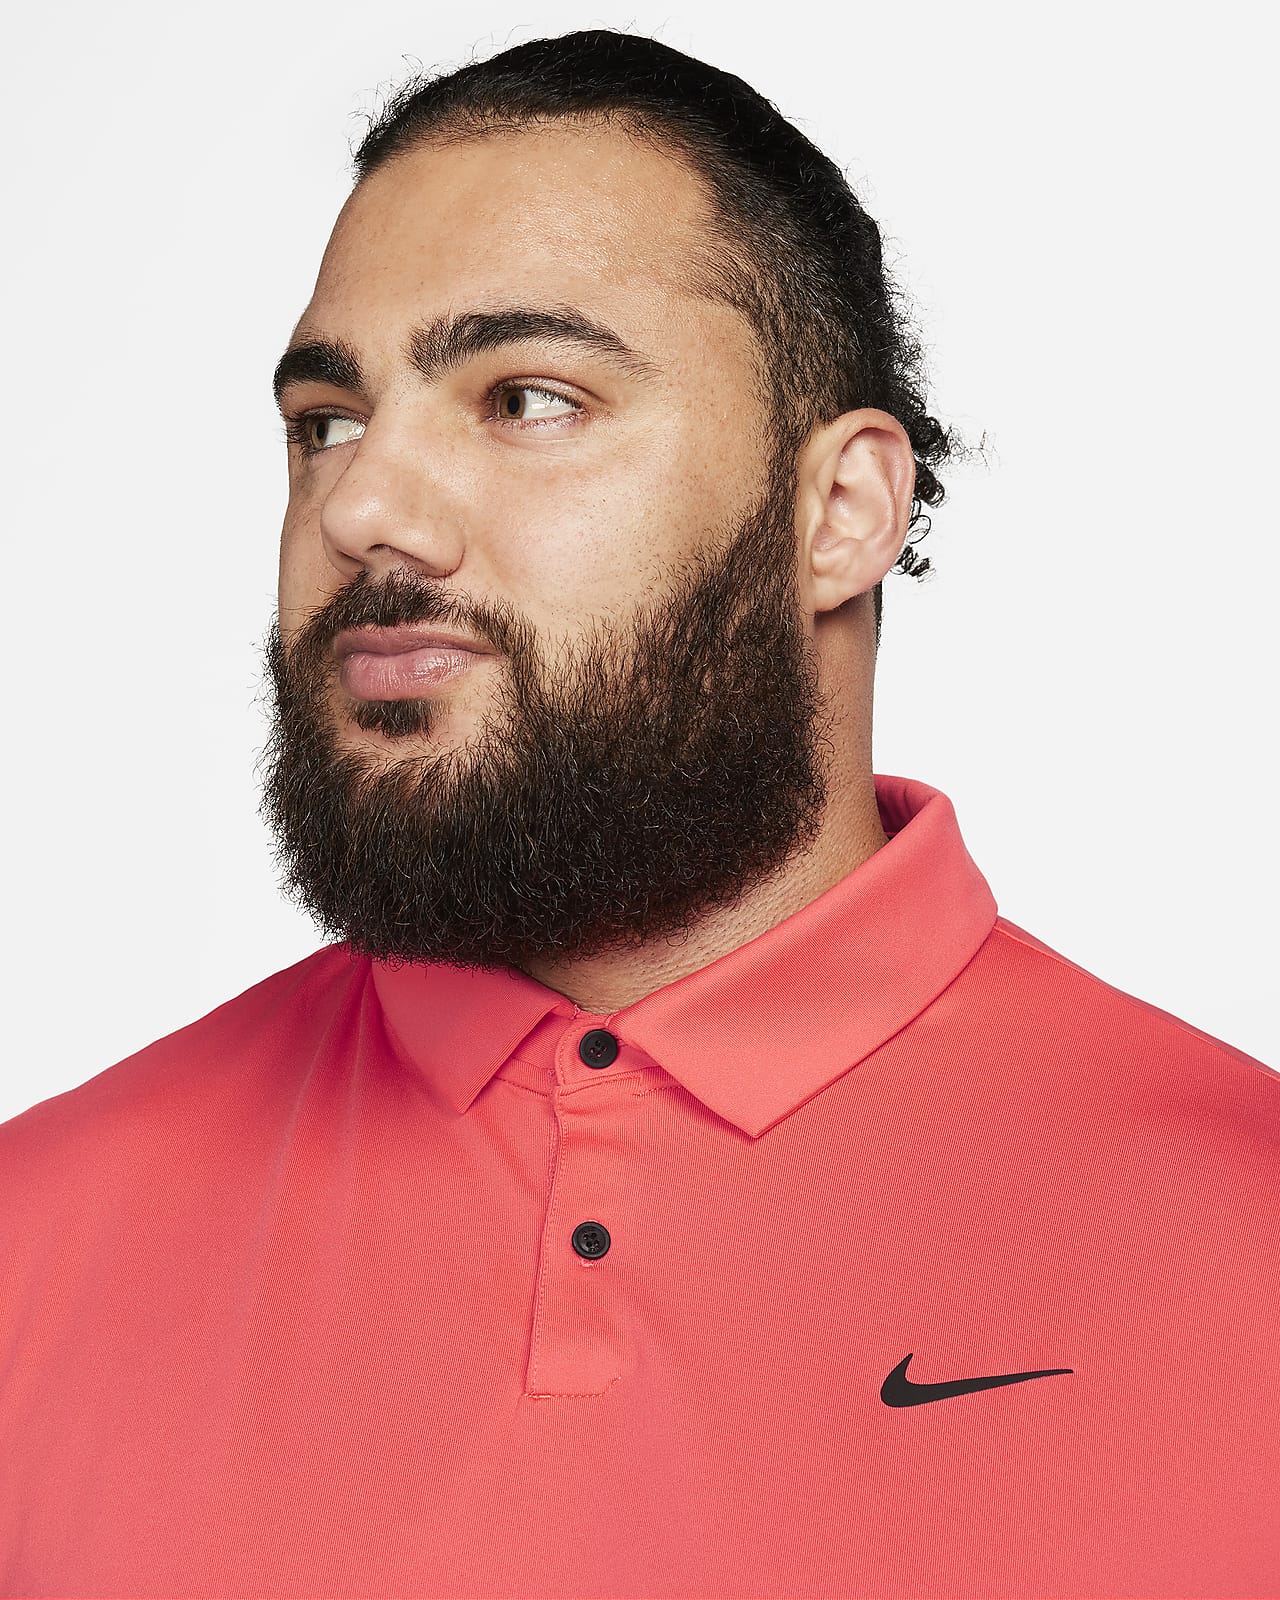 Nike Dri-FIT Tour einfarbiges Golf-Poloshirt für Herren